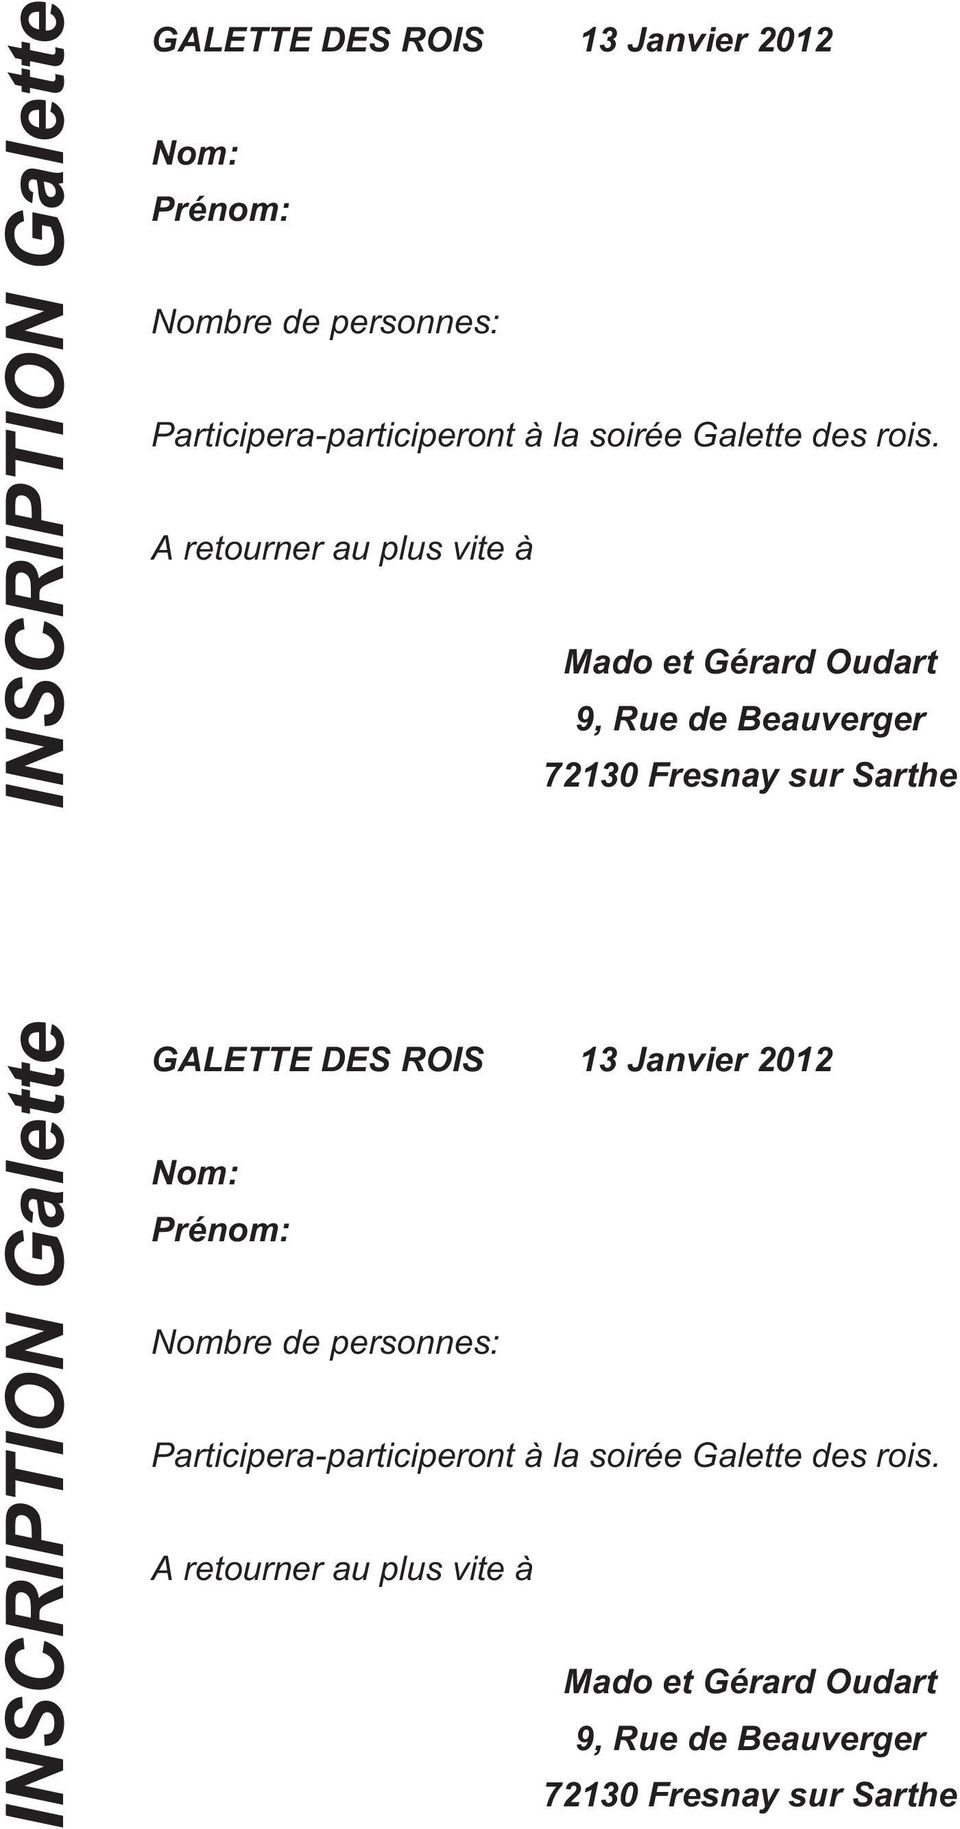 A retourner au plus vite à Mado et Gérard Oudart 9, Rue de Beauverger 72130 Fresnay sur Sarthe   A retourner au plus